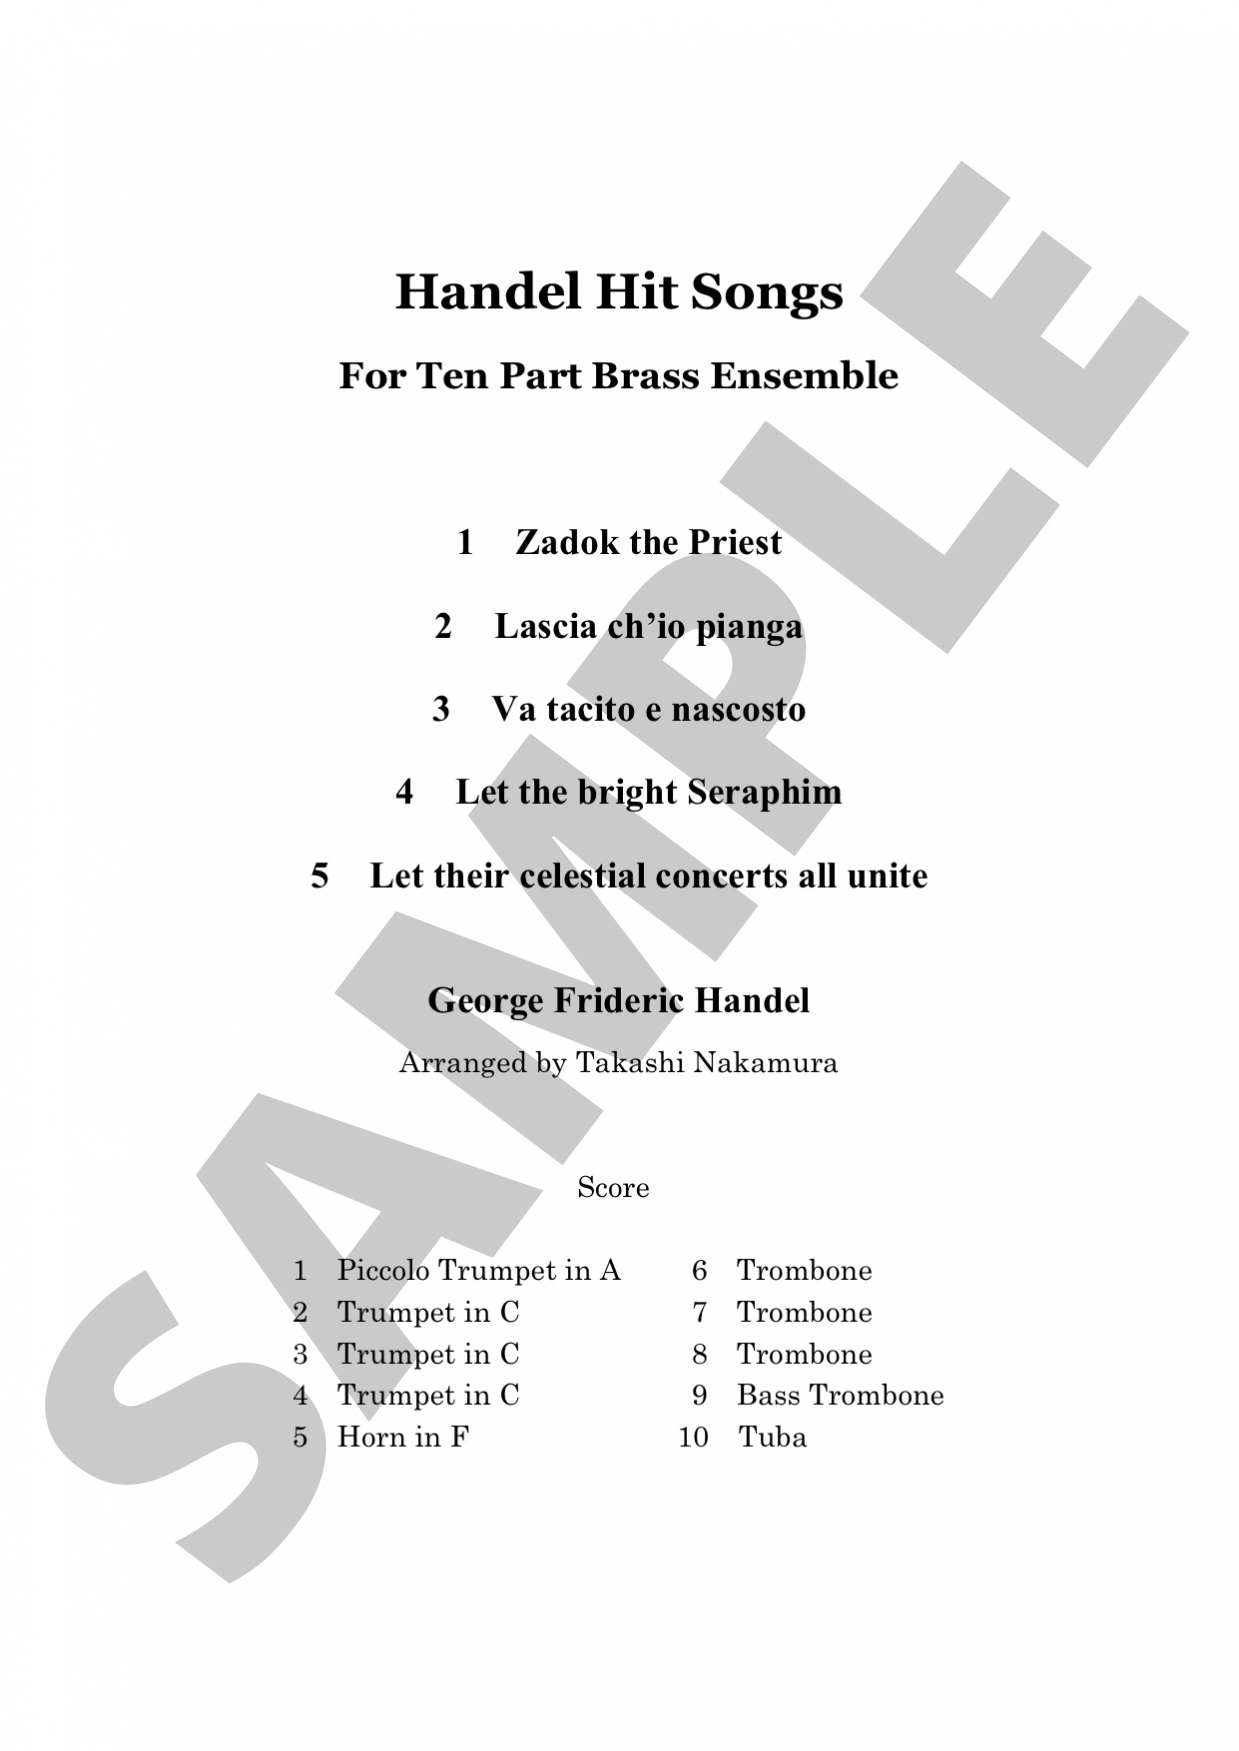 ヘンデル・ヒットソング集 (ヘンデル) 金管十重奏 | 金管アンサンブル楽譜 | NABEO Music Library